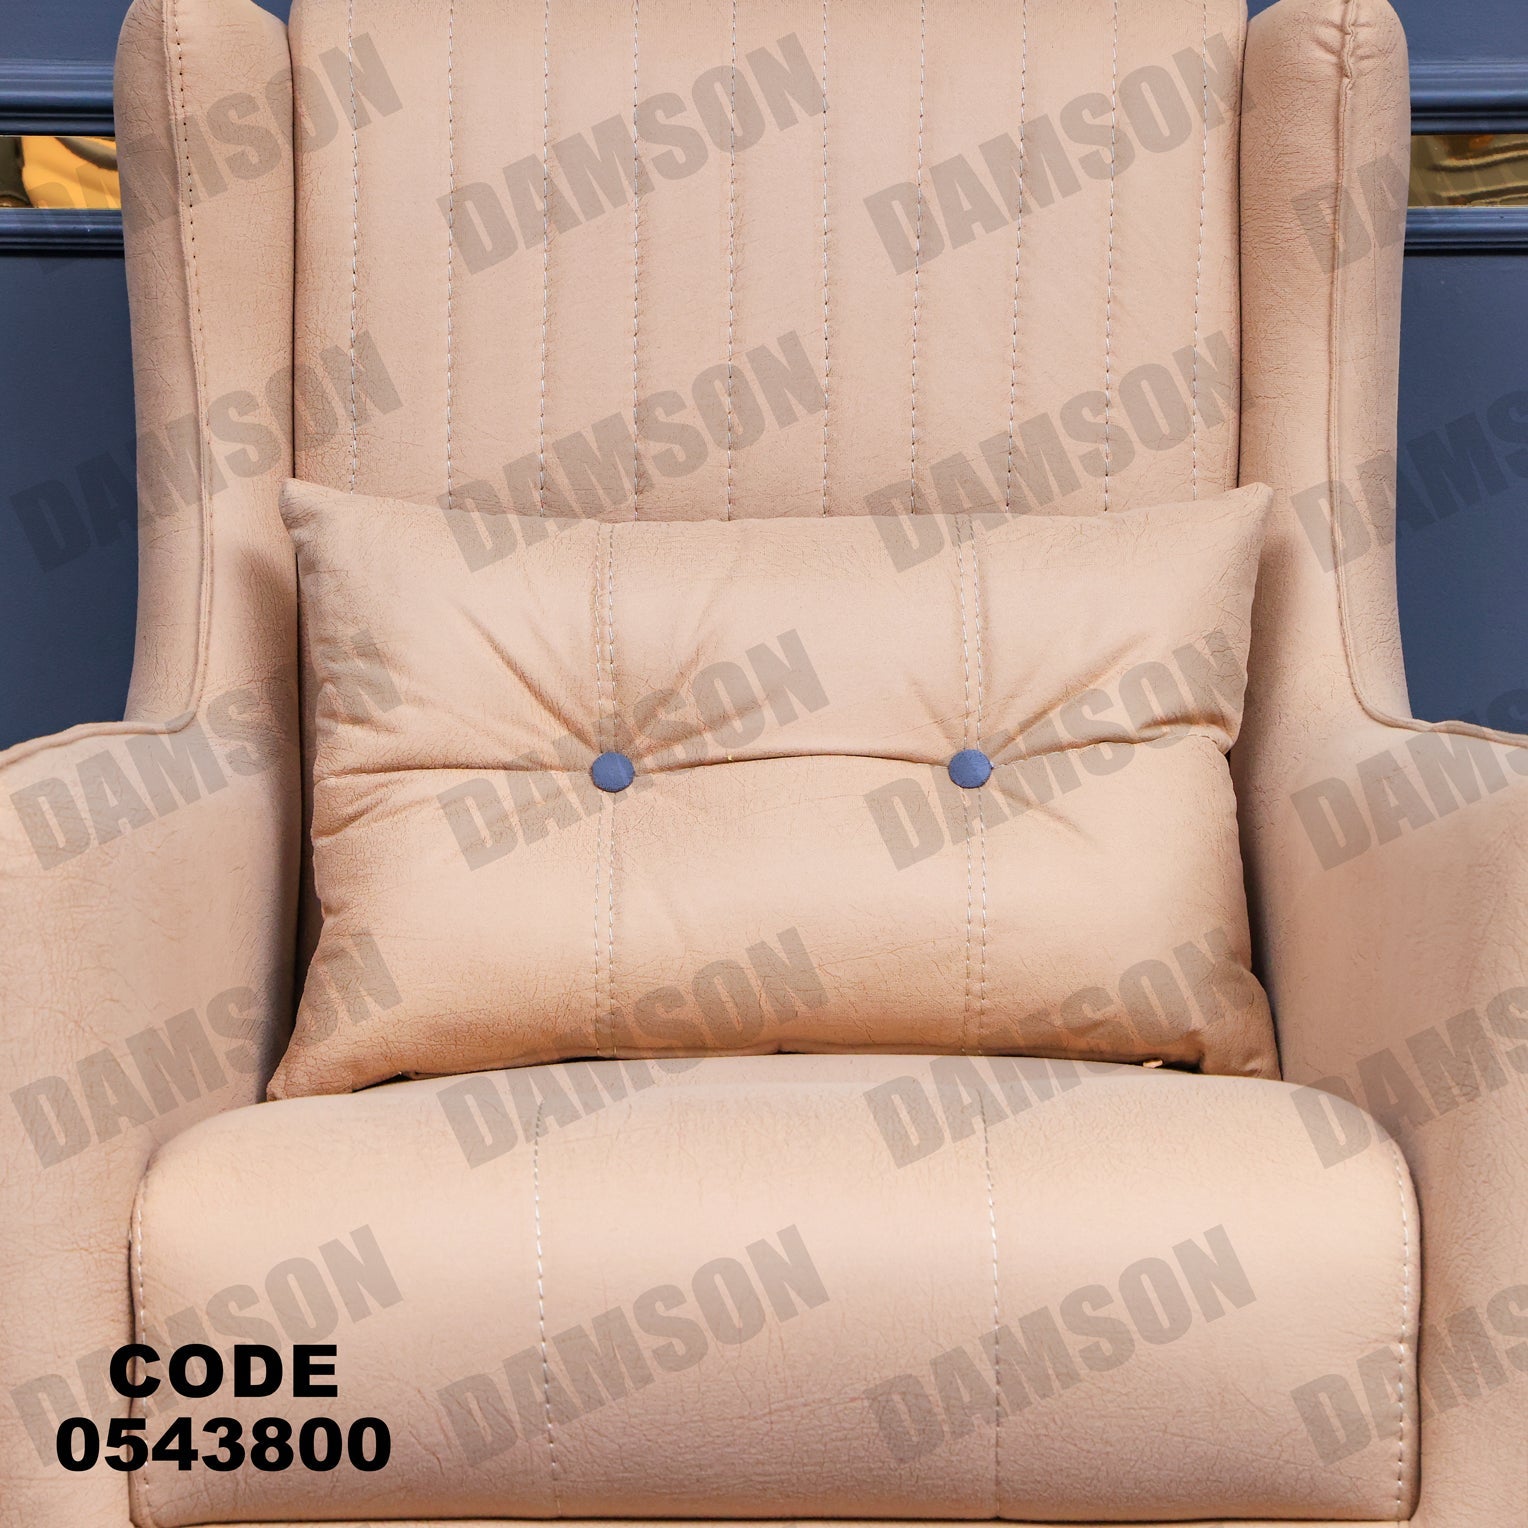 فوتية 2-438 - Damson Furnitureفوتية 2-438